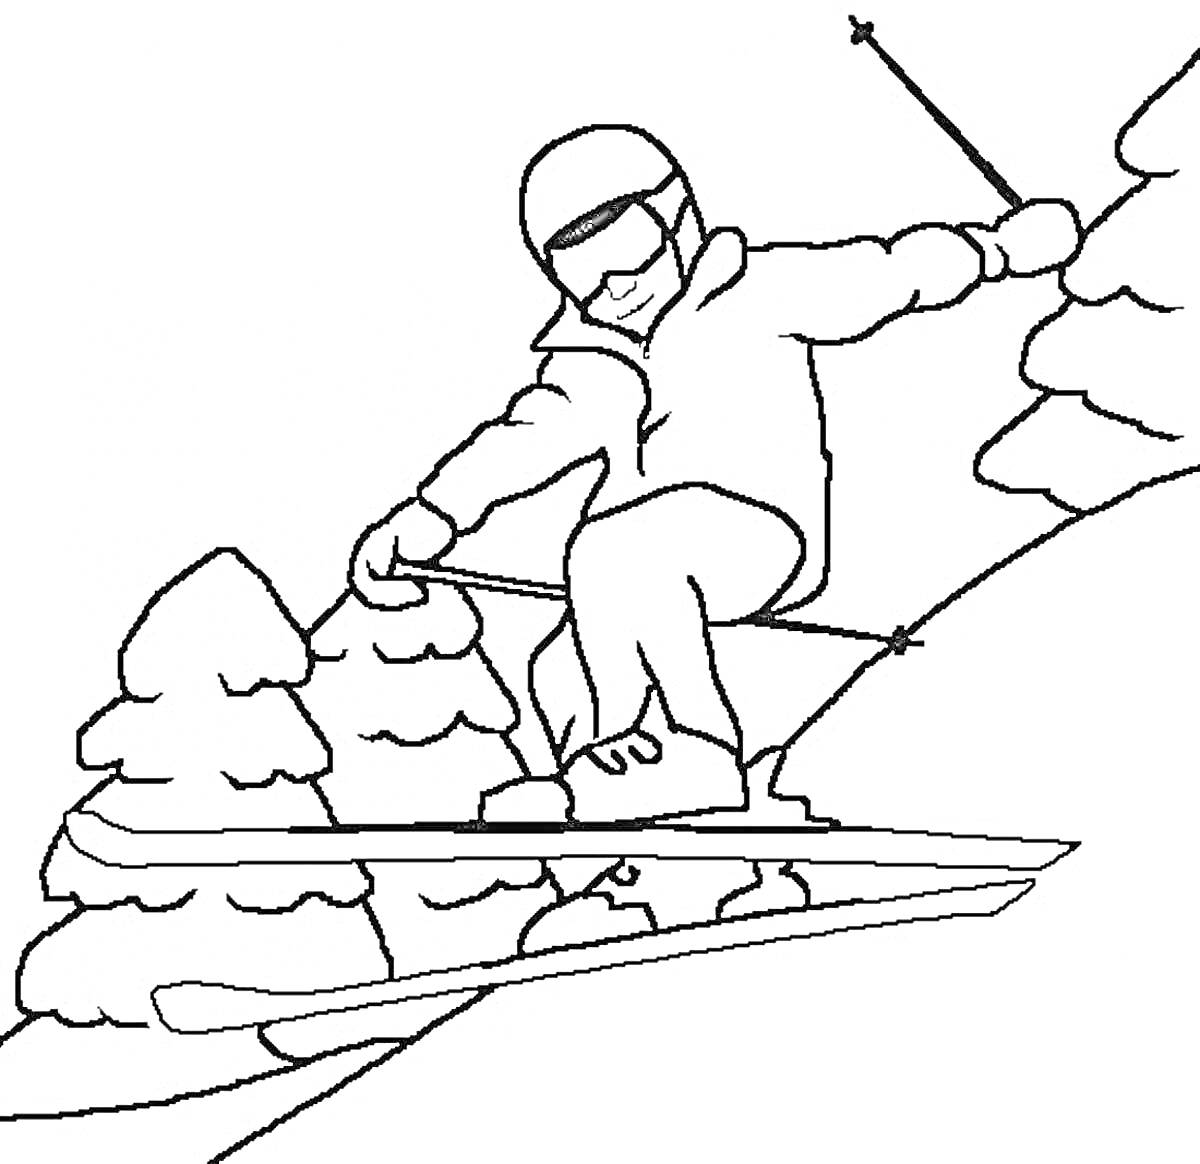 Лыжник, спускающийся с горы со снегом и деревьями, в шлеме и очках